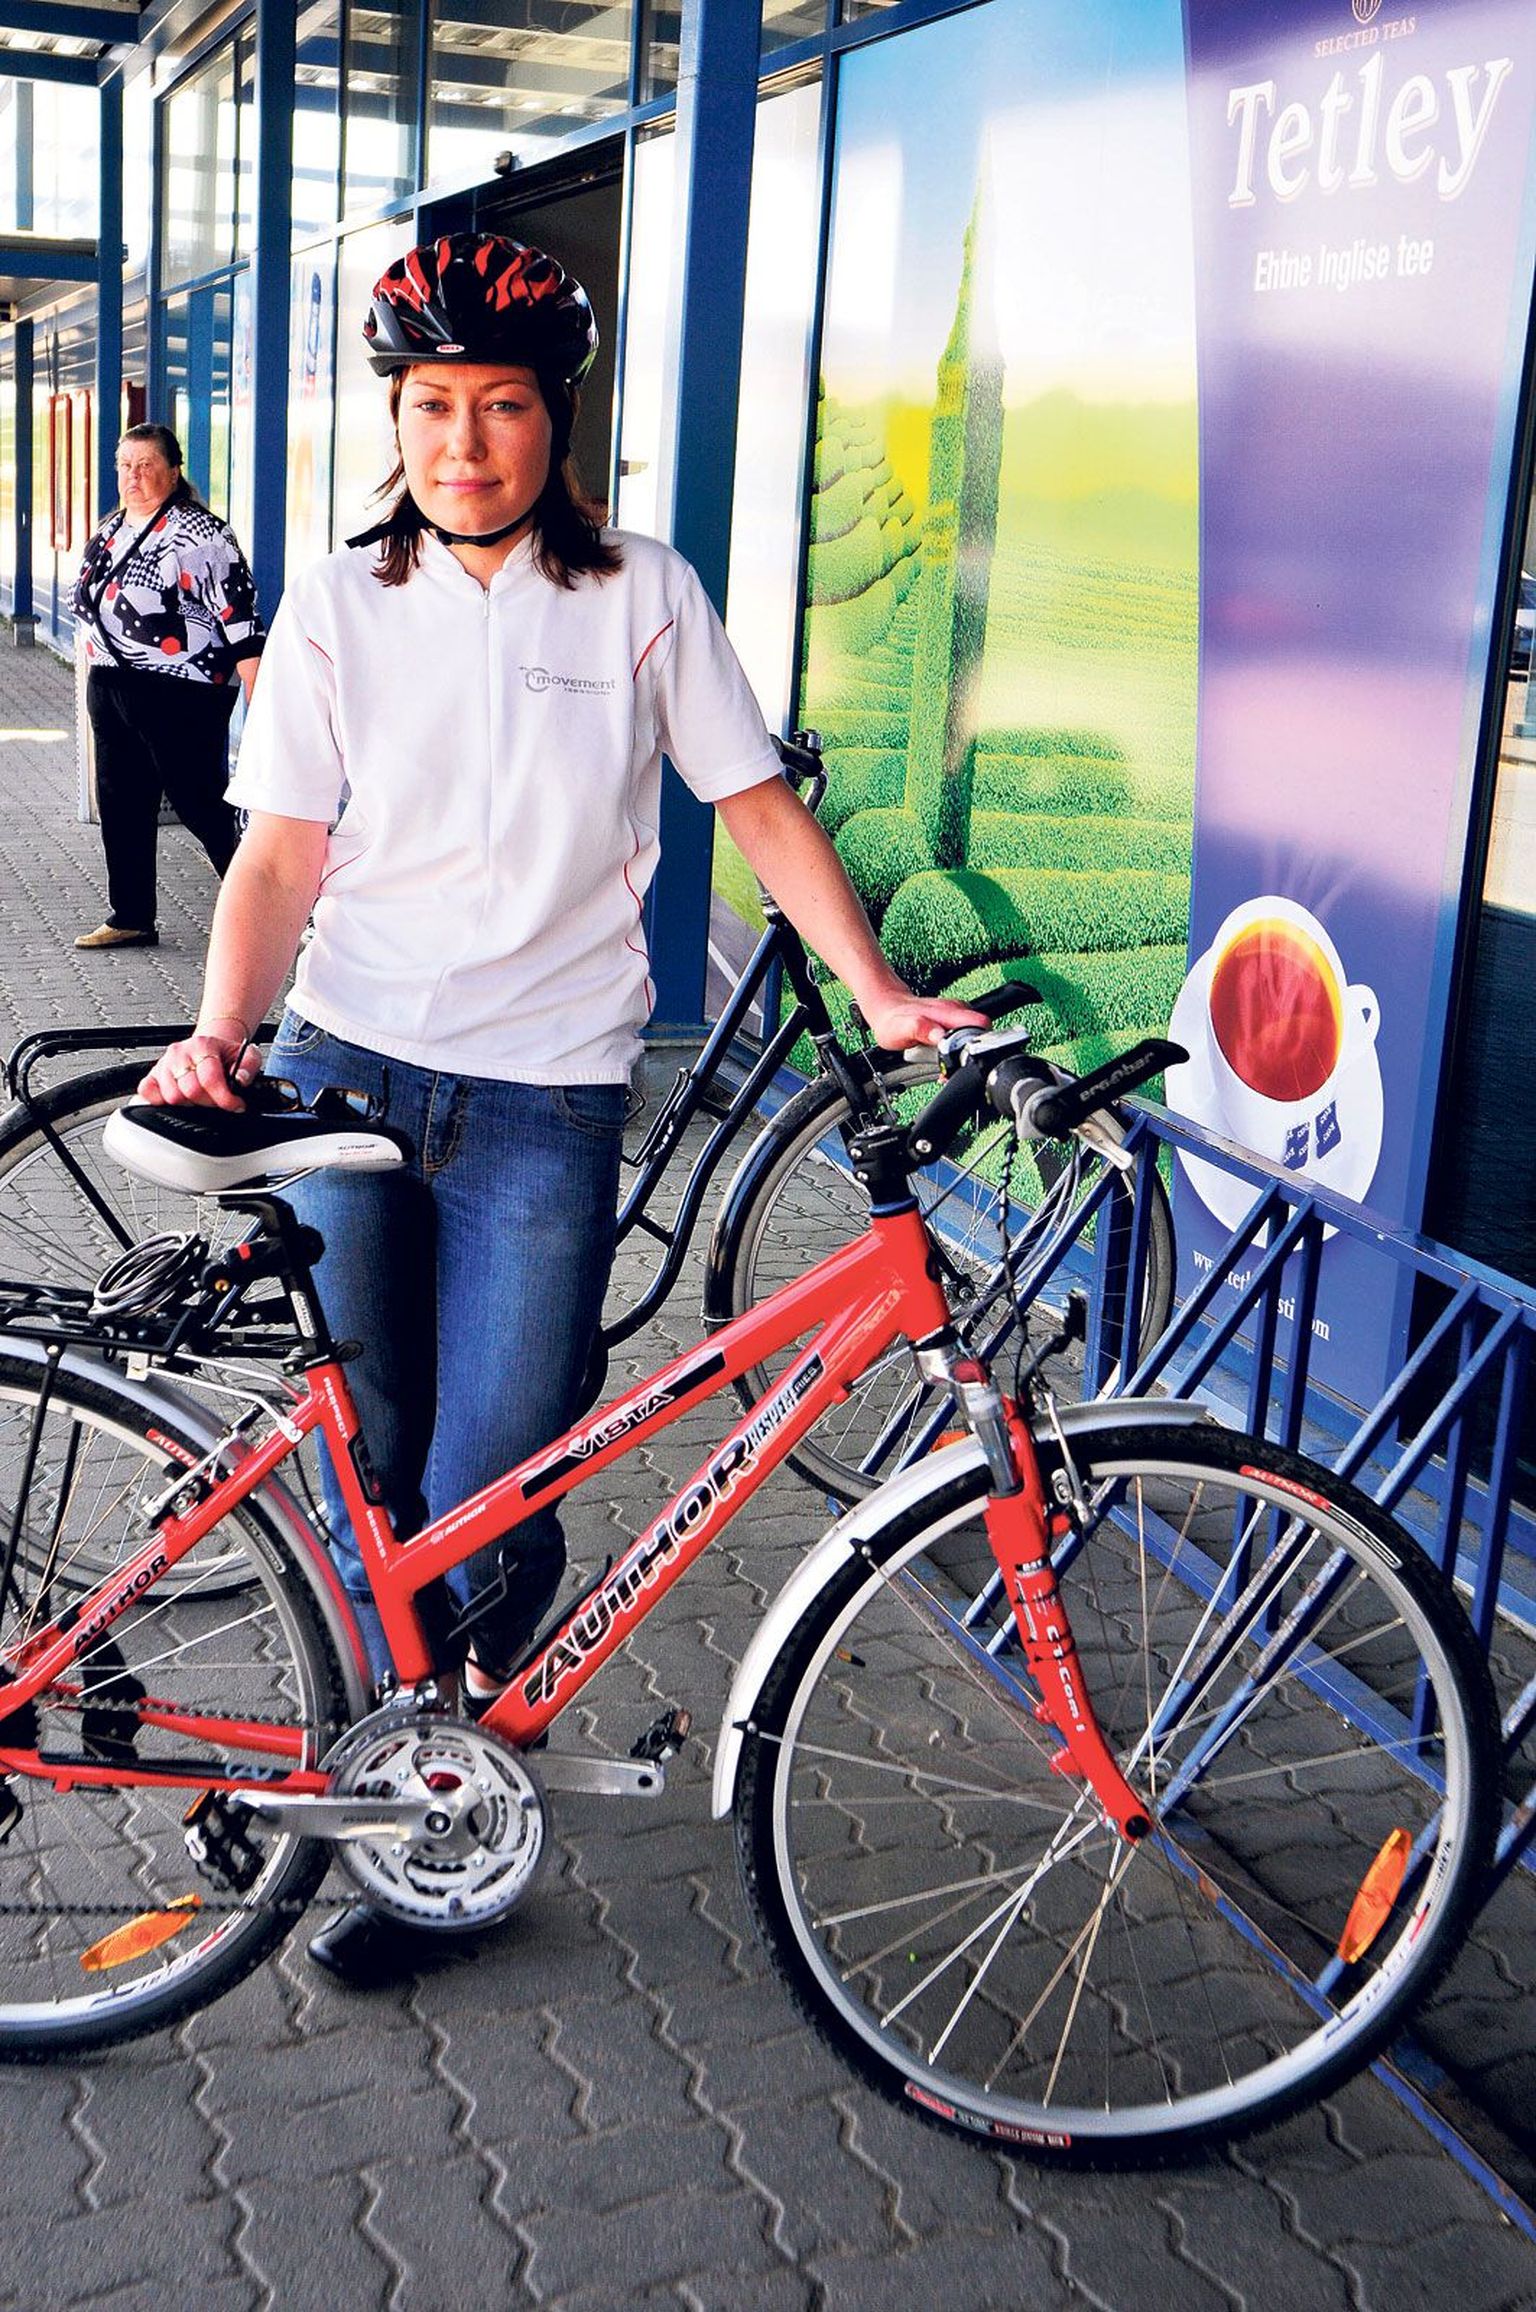 Uued jalgrattahoidjad on paremad kui vanad, arvas Annely Pendis, kes sõidab tihti tööle rattaga.